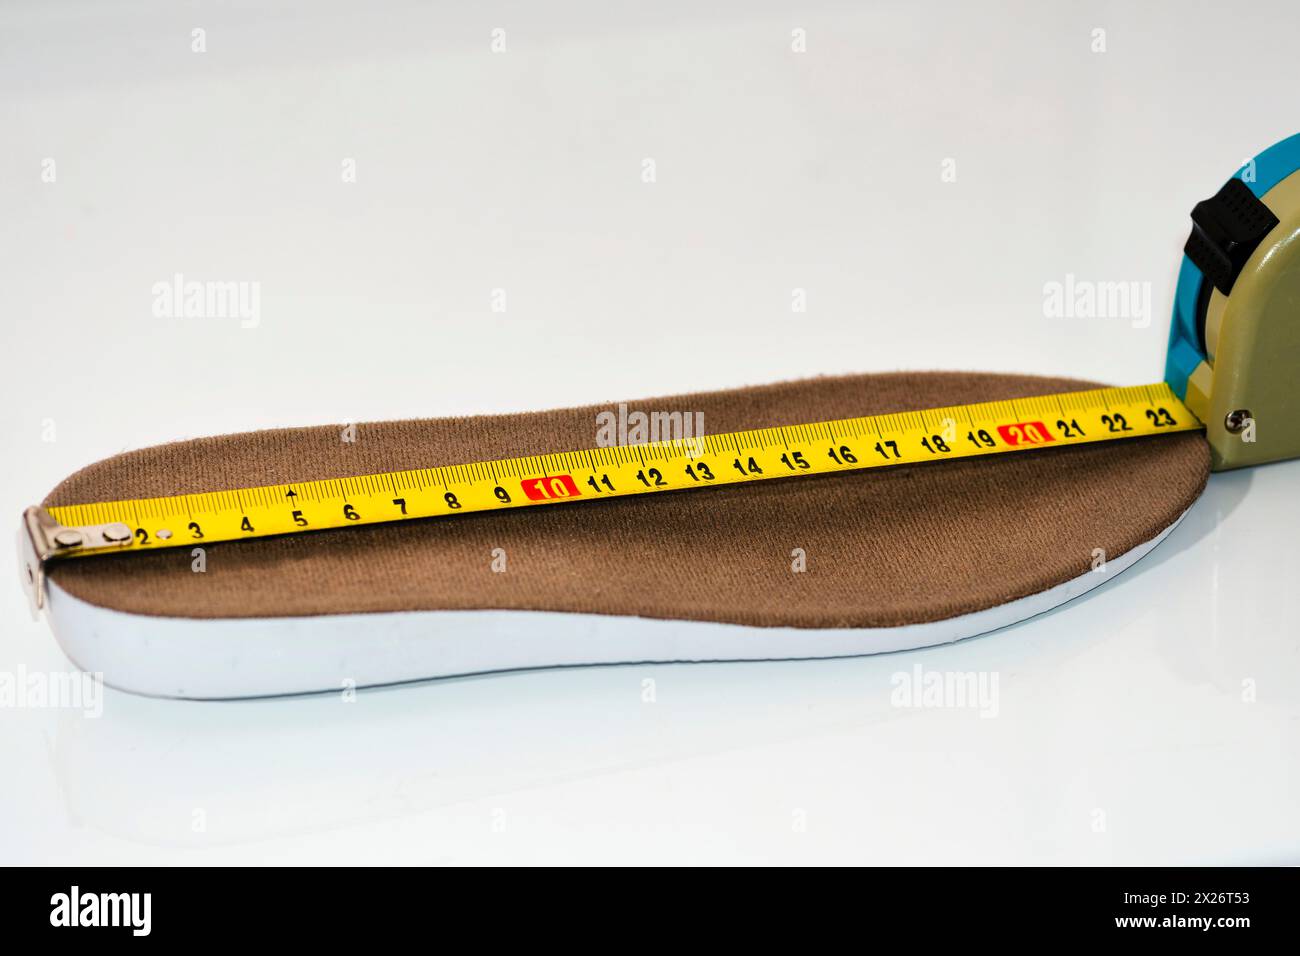 Messung der Schuhgröße. Messen Sie die Einlegesohlen mit Maßband. Schuhgröße Konzept. Nahaufnahme. Schuhskala messen. Größentabelle für Schuhe Stockfoto